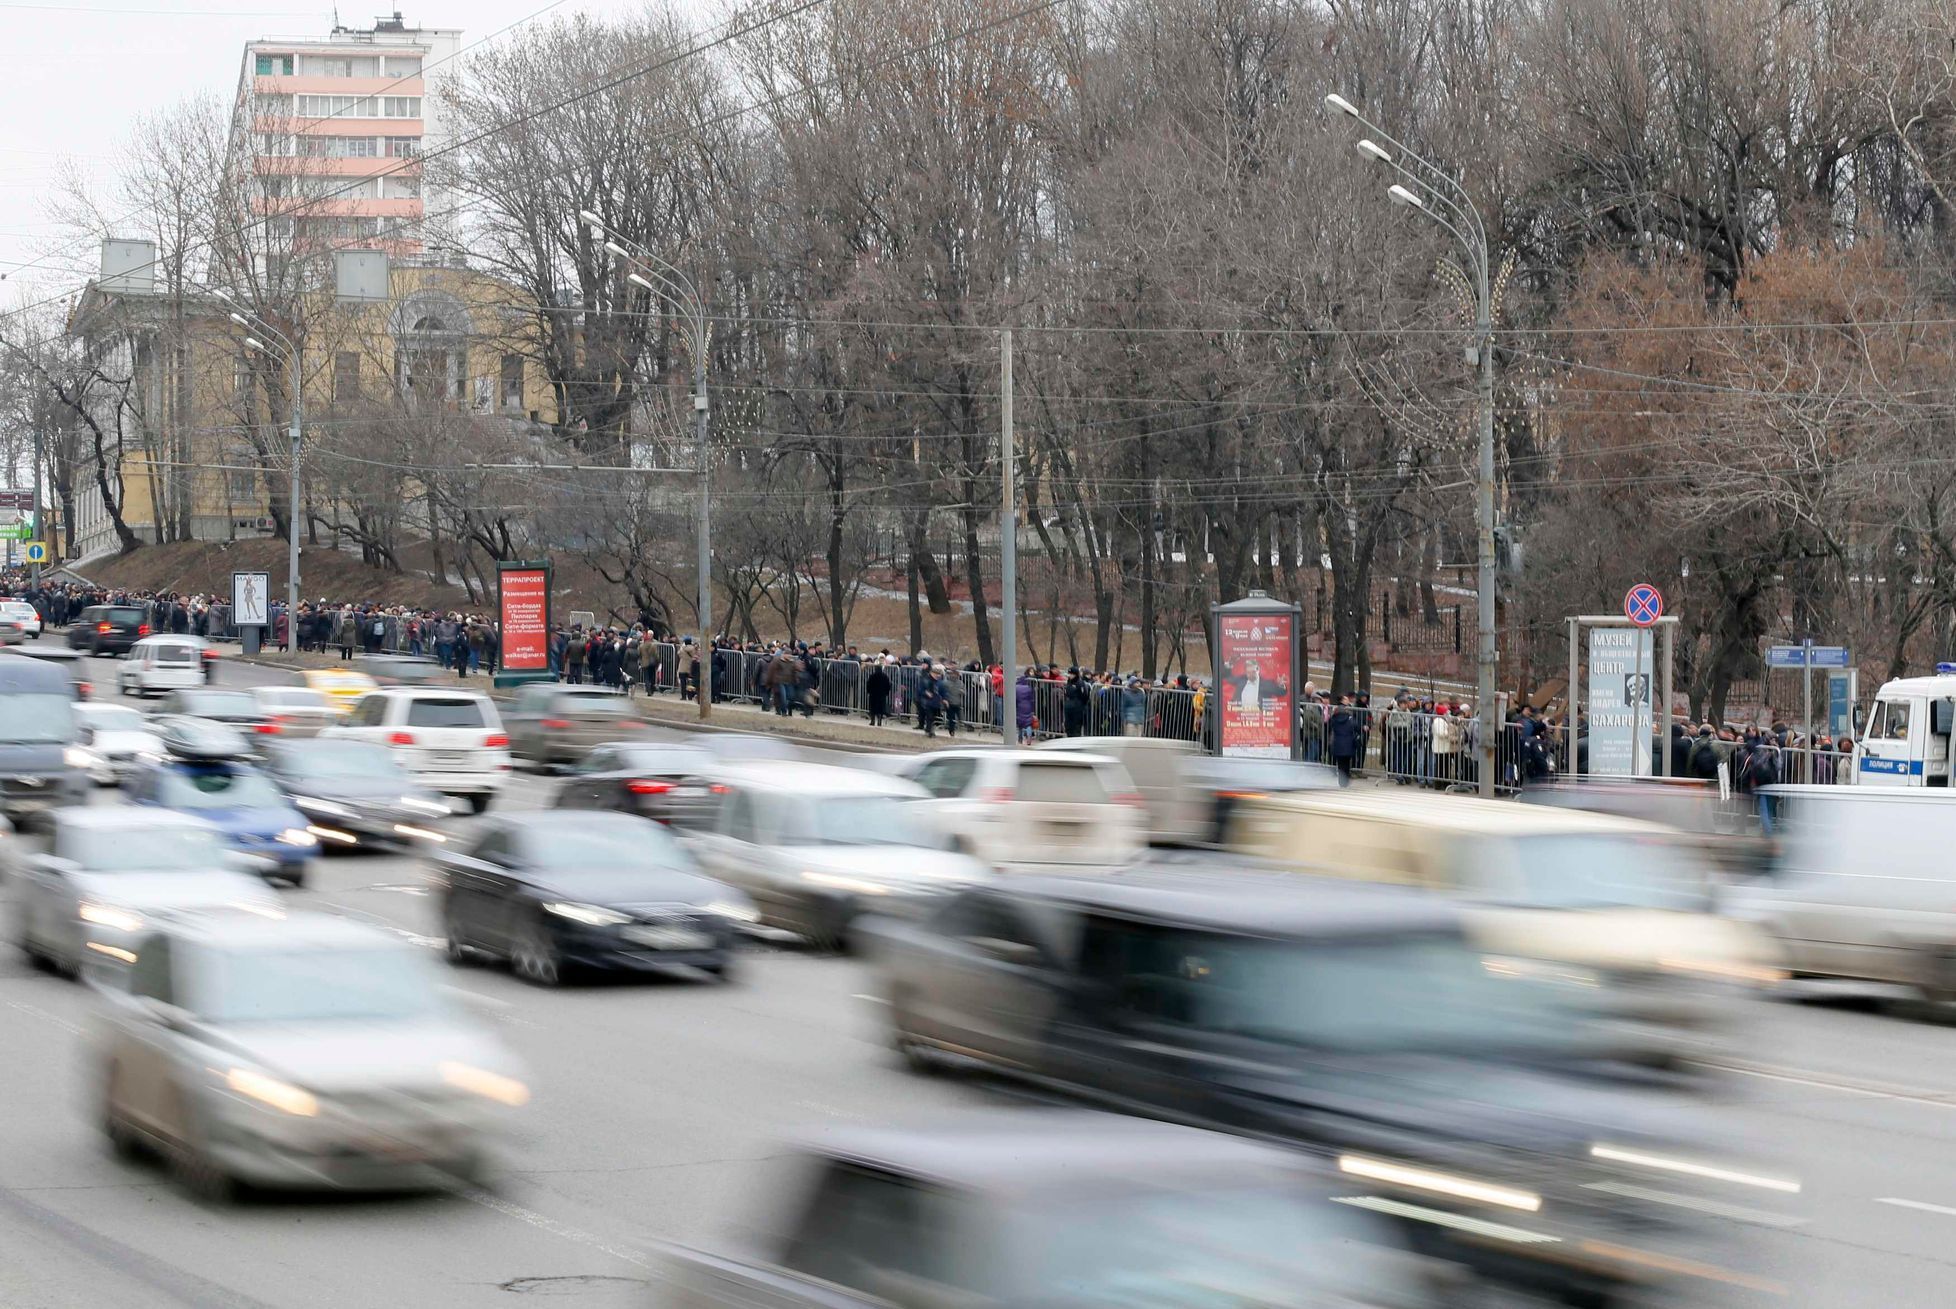 Pohřeb Němcova